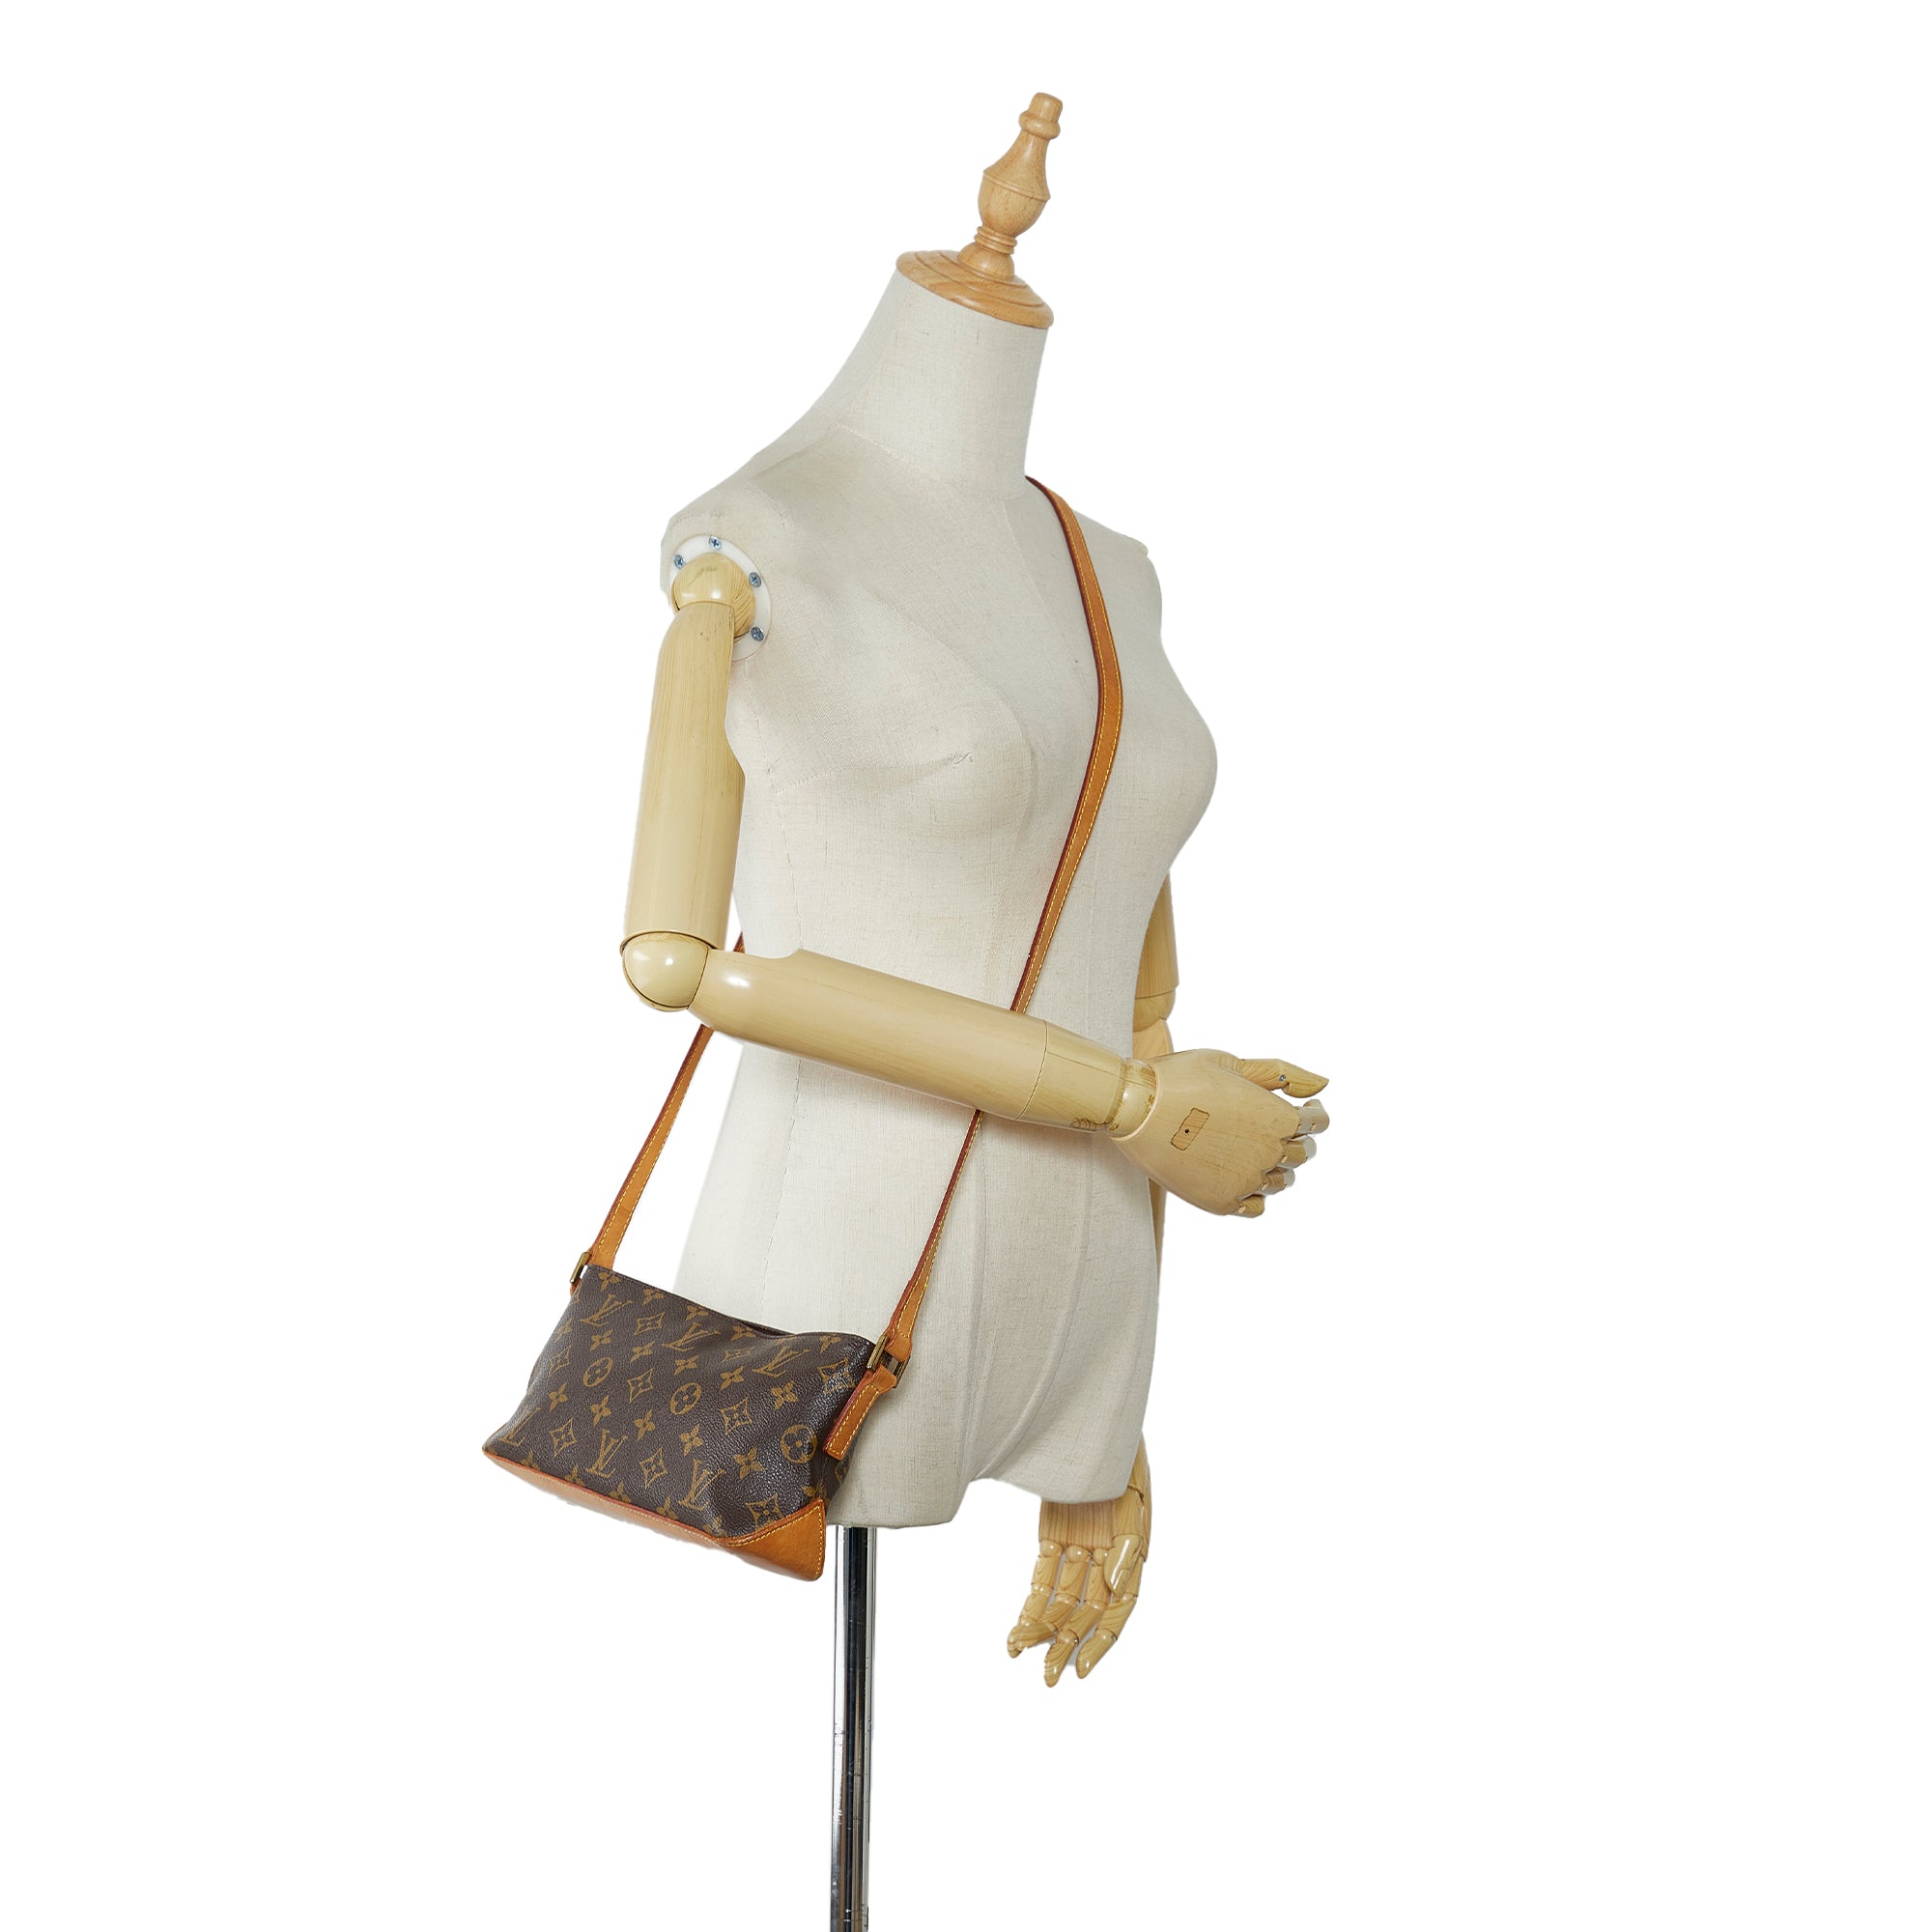 Louis Vuitton - Authenticated Trotteur Handbag - Cotton Brown For Woman, Good condition